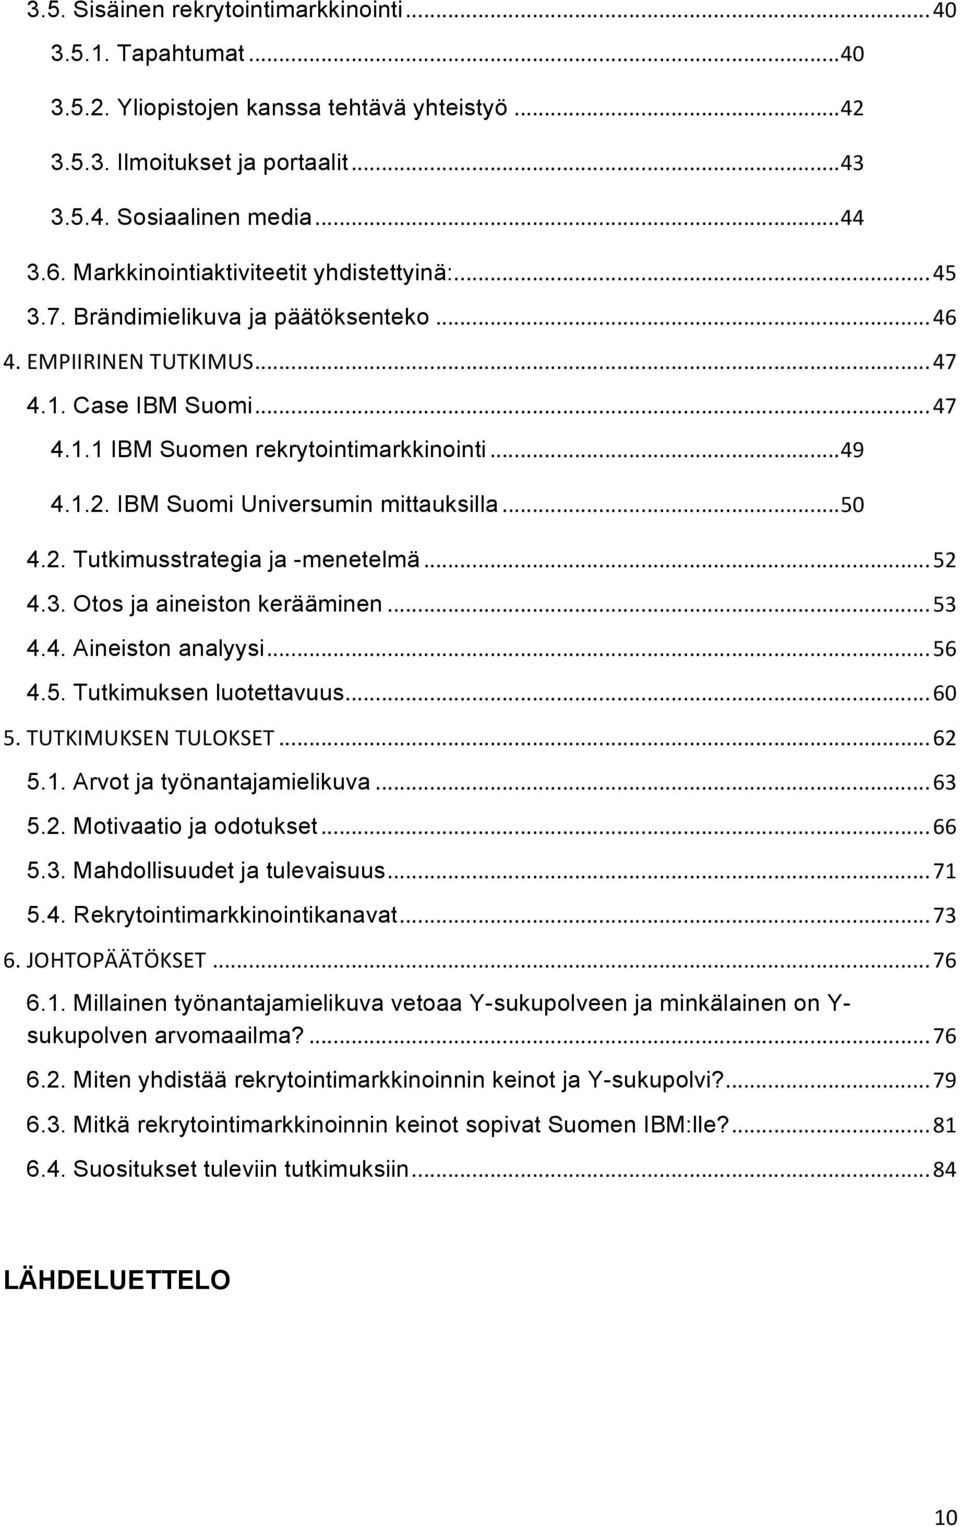 IBM Suomi Universumin mittauksilla... 50 4.2. Tutkimusstrategia ja -menetelmä... 52 4.3. Otos ja aineiston kerääminen... 53 4.4. Aineiston analyysi... 56 4.5. Tutkimuksen luotettavuus... 60 5.